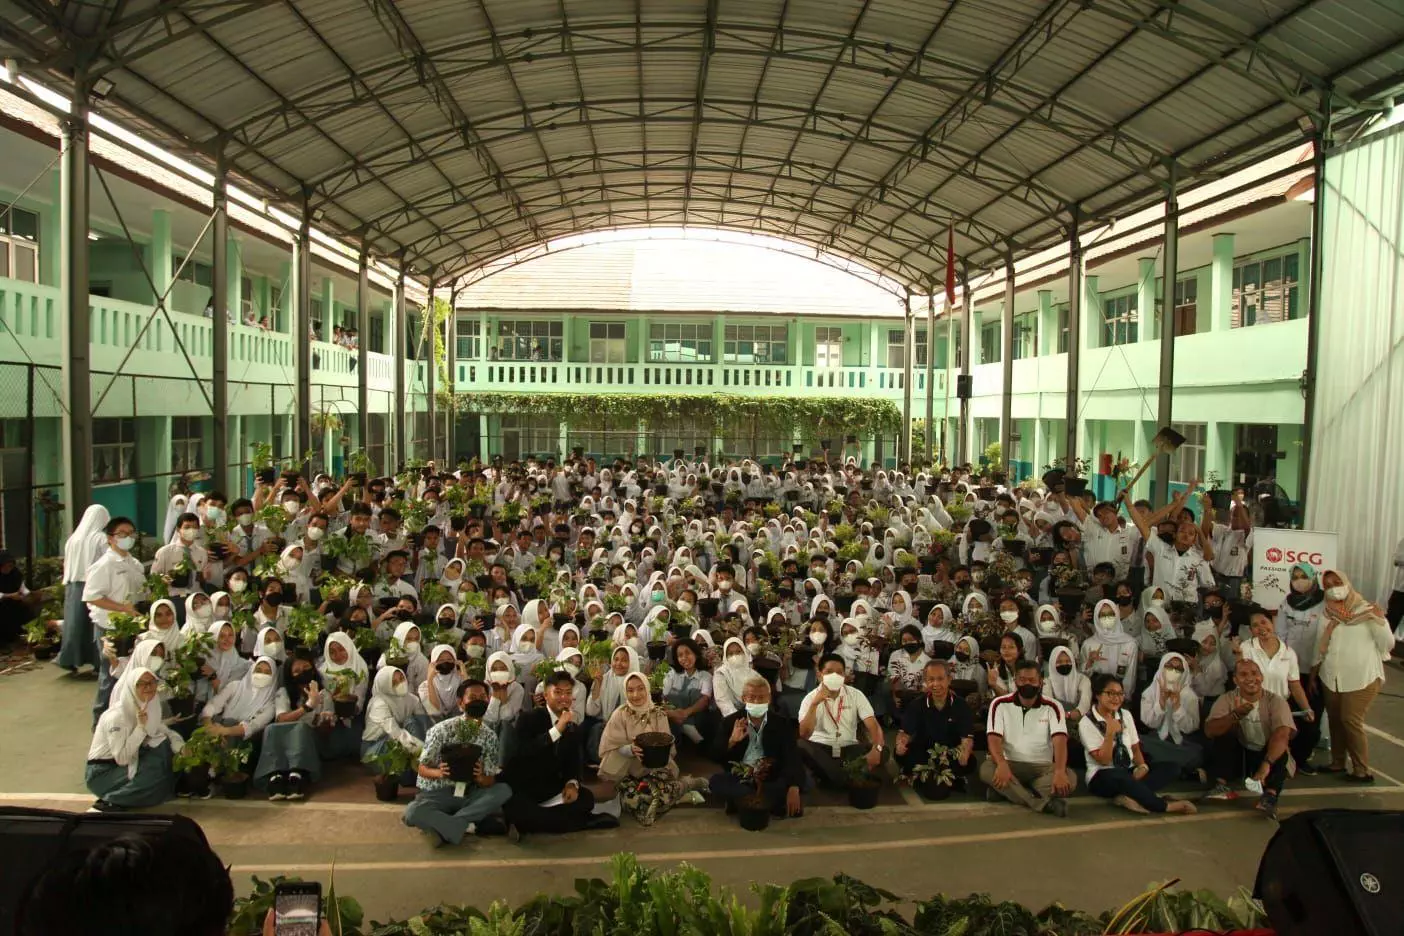 Co-founder teens go green indonesia, bambang sutrisno, menyampaikan materi tentang pentingnya pemulihan dan pelindungan bumi dari pemanasan global (global warming). Acara ini diikuti oleh 859 pelajar sman 1 cileungsi dan sekitarnya secara hybrid